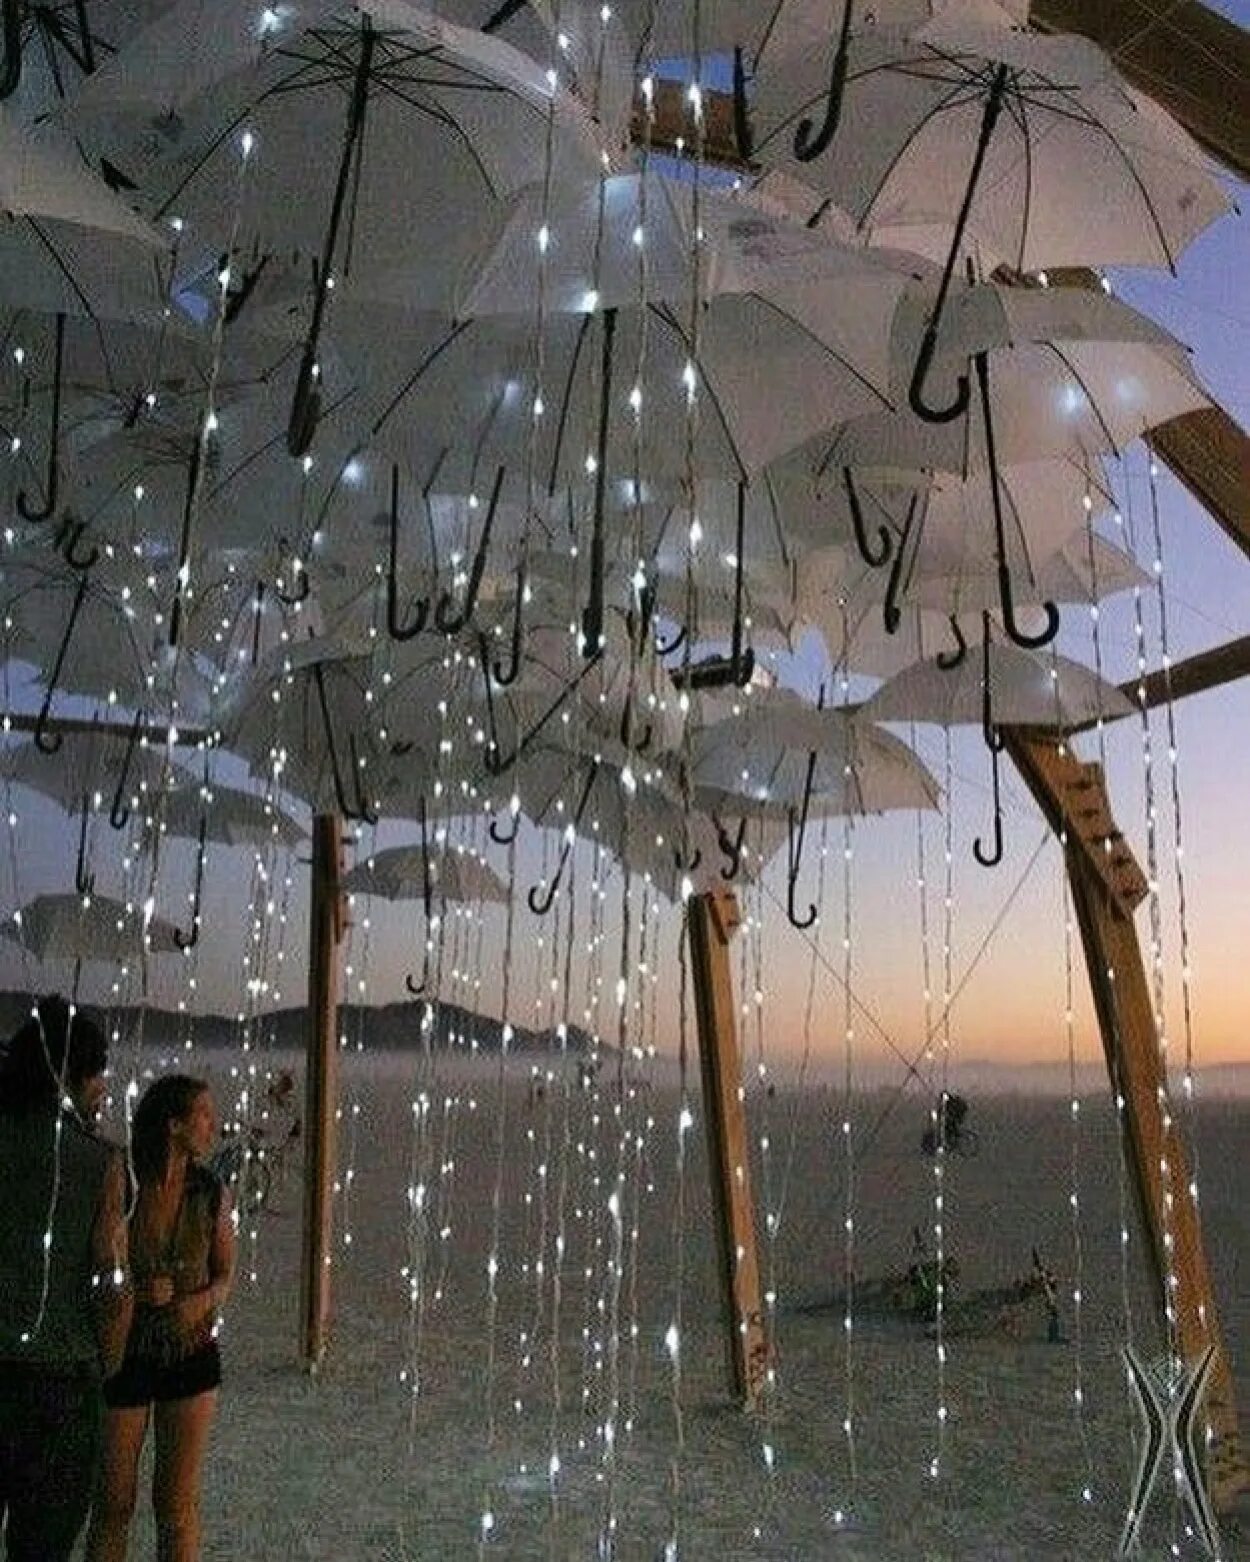 Дождь не прекращавшийся в течение ночи. Инсталляция с зонтами. Хорошего настроения в дождливую погоду. Свадебная инсталляция. Фотозона с зонтами.